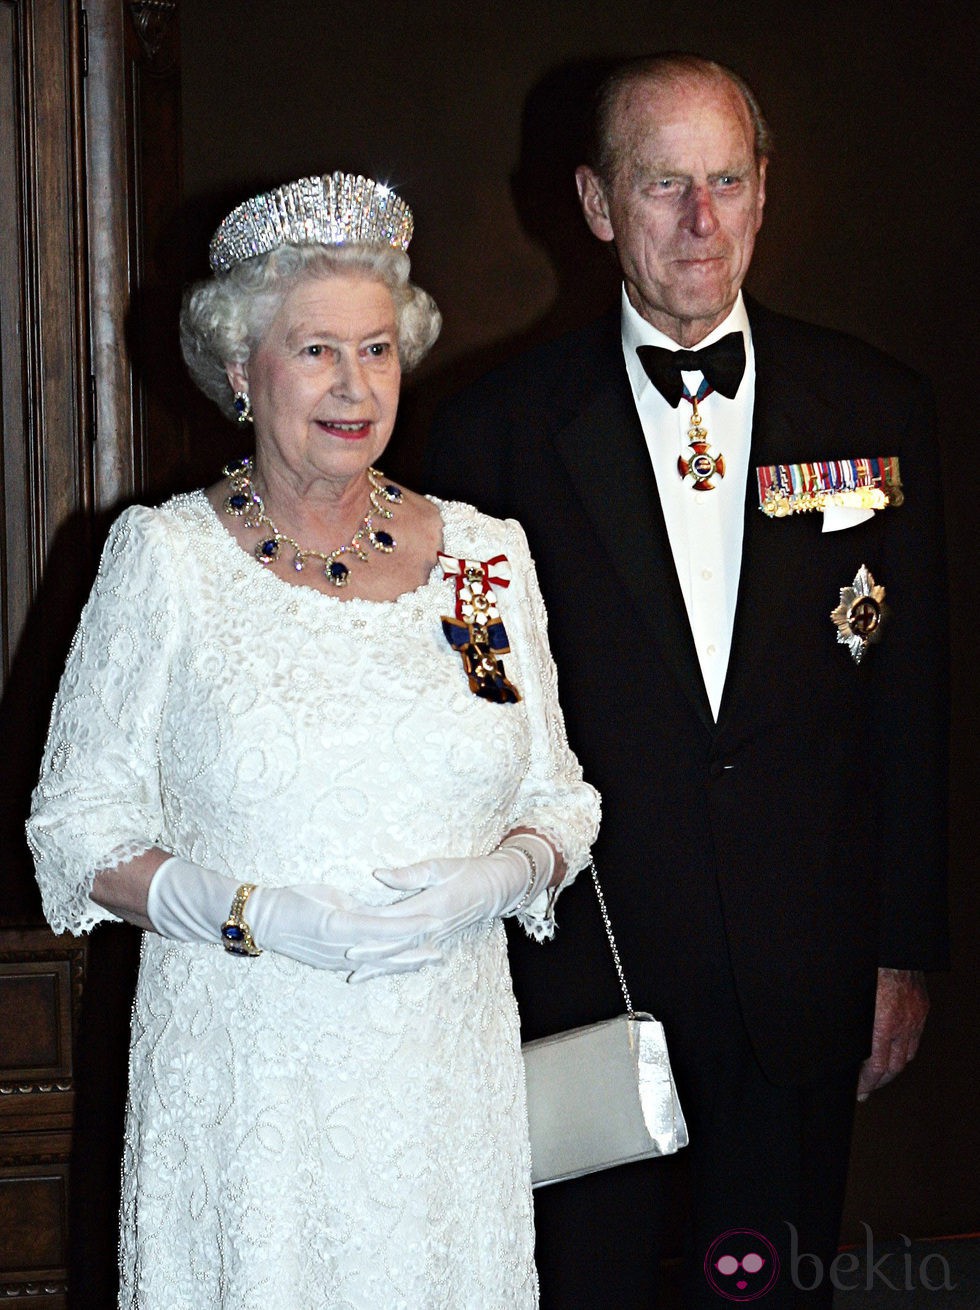 Isabel II de Inglaterra y el Duque de Edimburgo a Canadá en 2005